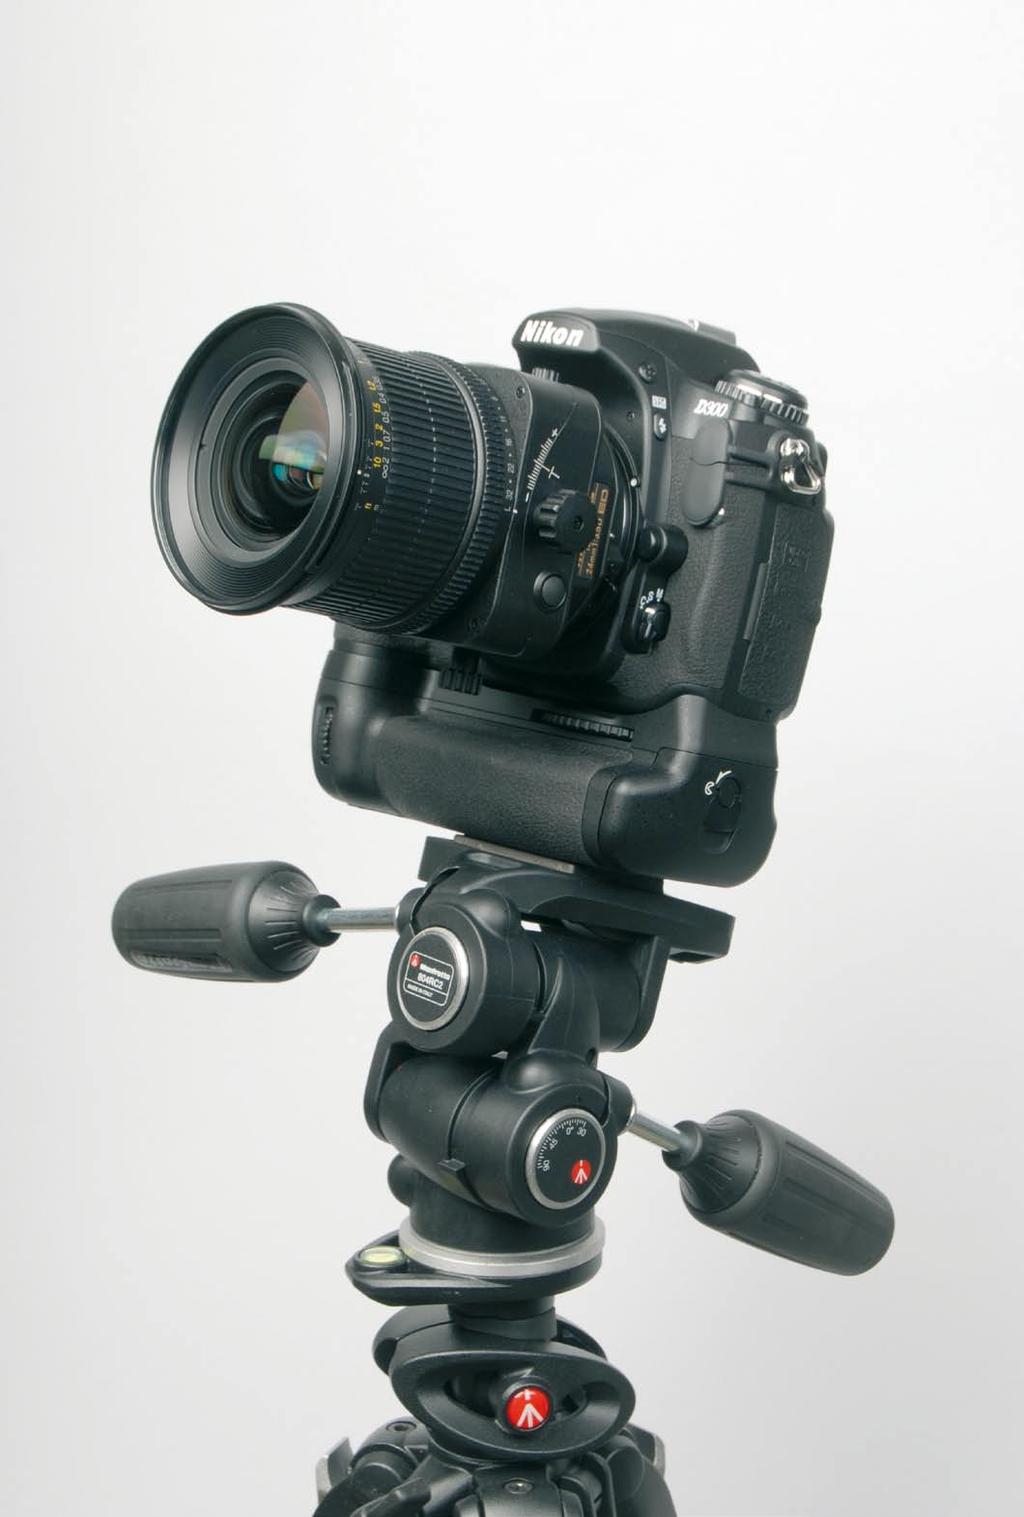 Prova sul campo 24mm Nikon Tilt & Shift Il Nikkor PC-E 24mm f/3.5d ED è un nuovo obiettivo Nikon dotato dei movimenti di decentramento e basculaggio.